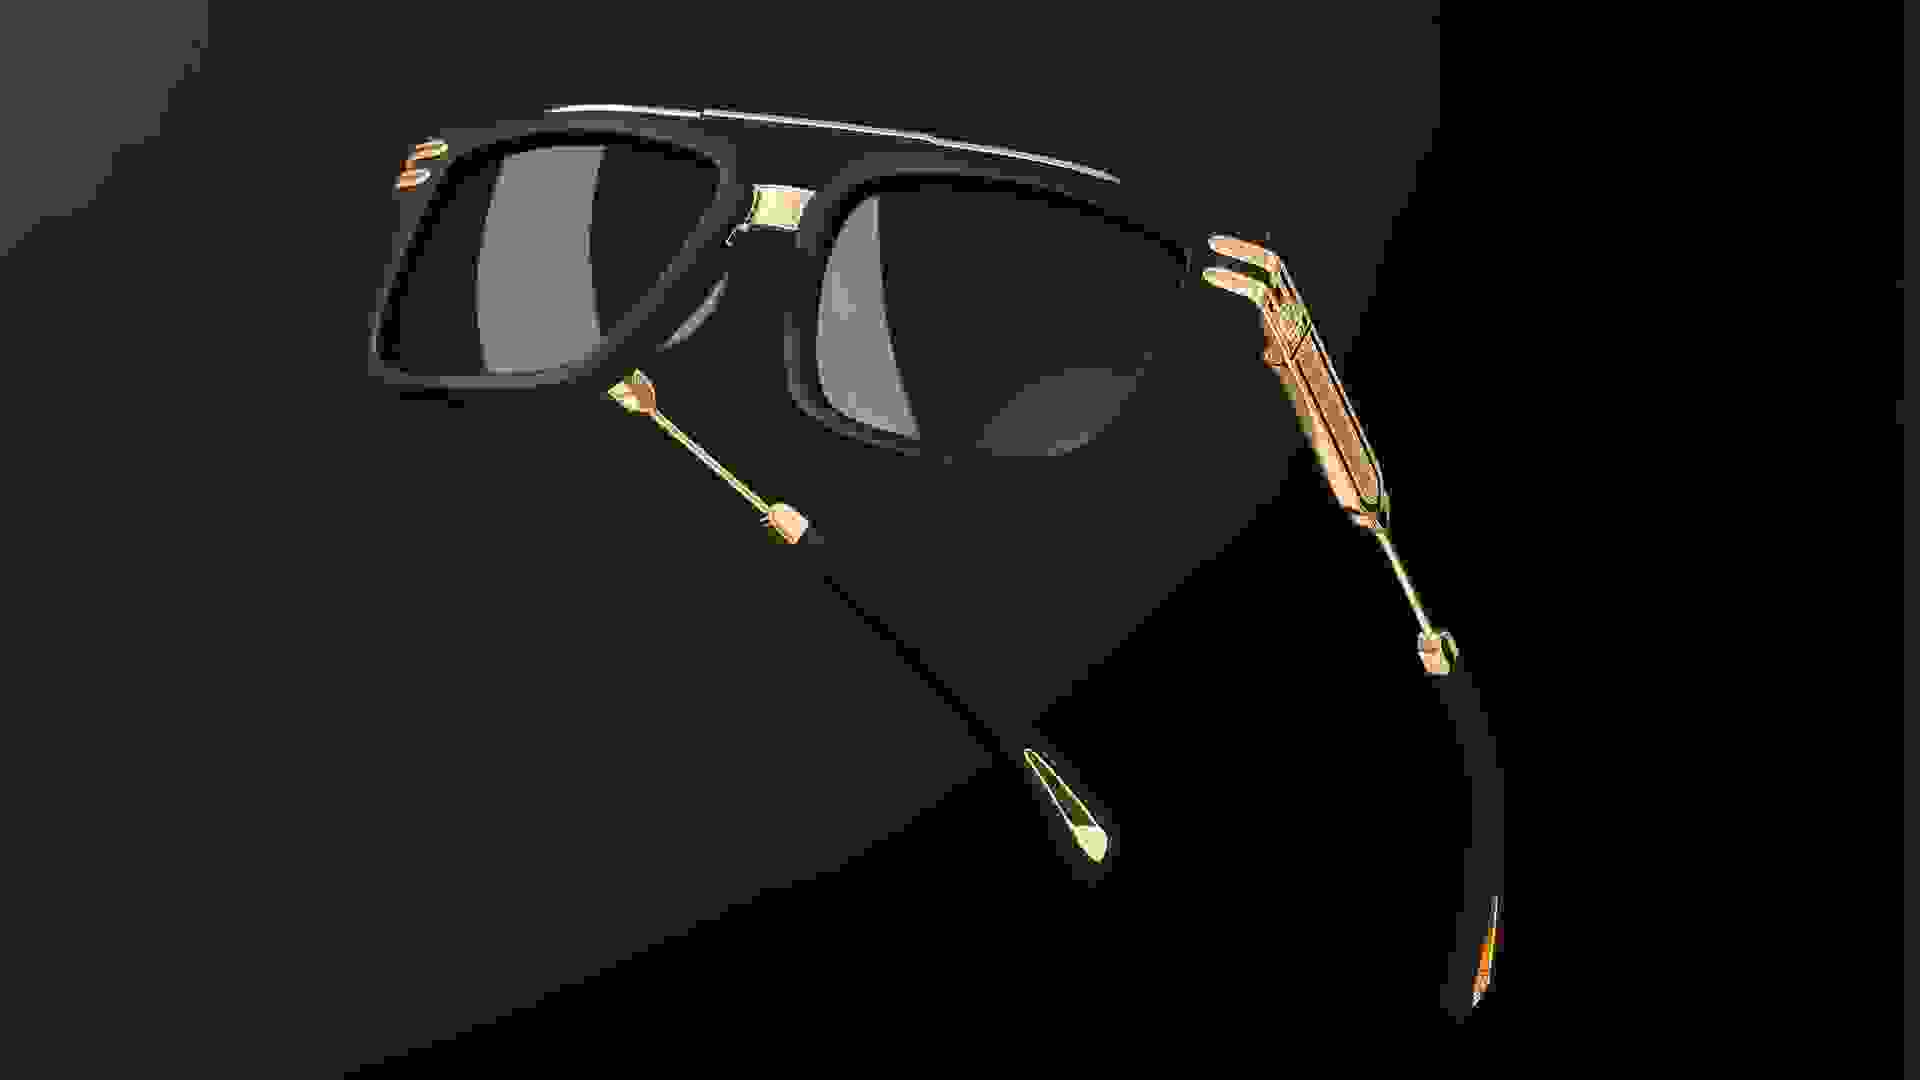 Nahaufnahme von einer Maybach Sonnebrille mit goldenen Details und schwarzem Hintergrund.